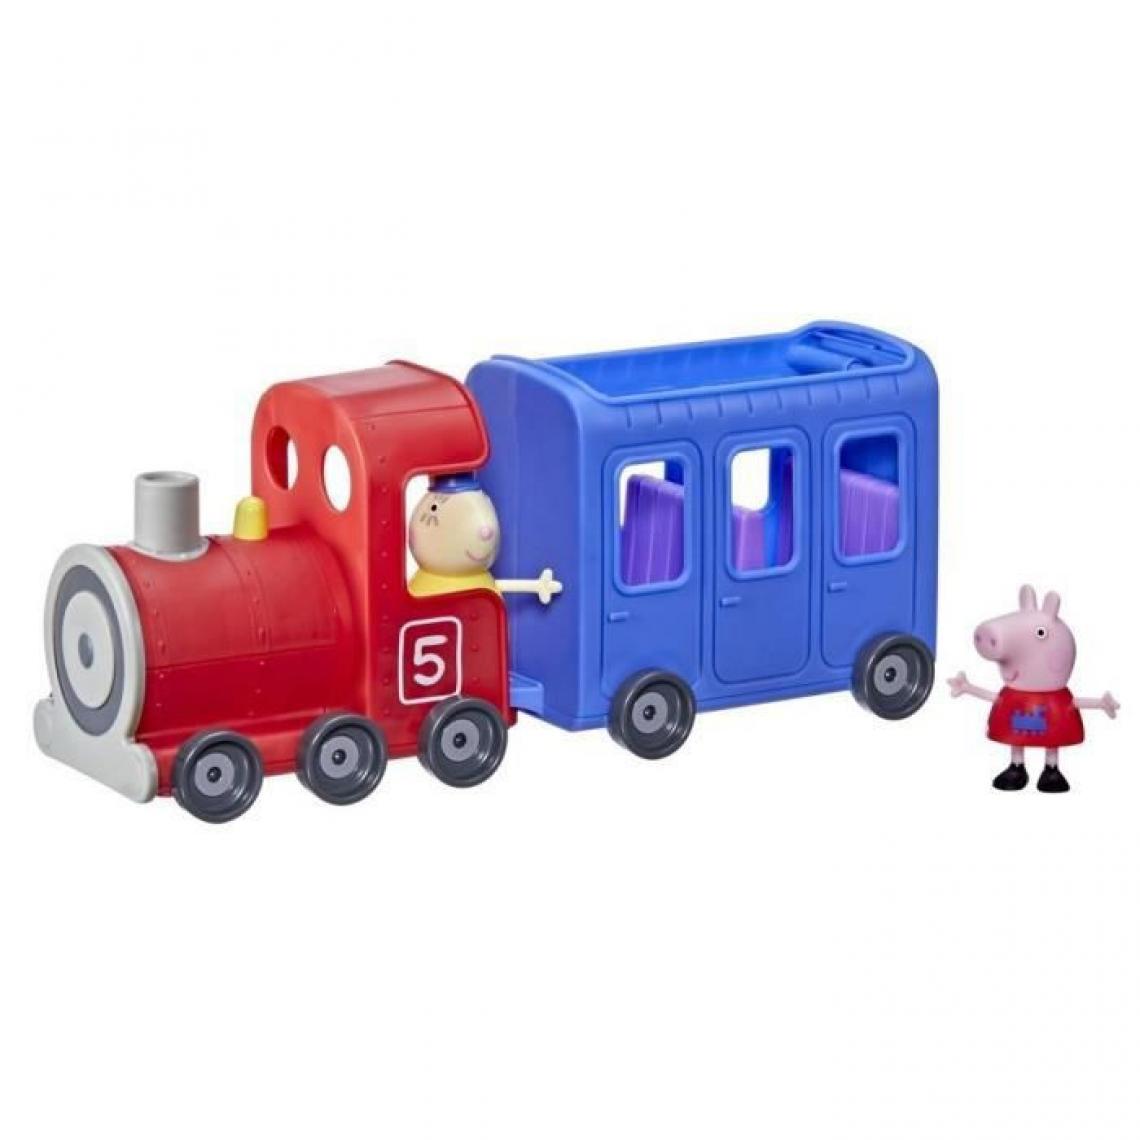 Hasbro - PEPPA PIG - Peppa's Adventures - Le train de Mlle Rabbit - jouet préscolaire roulant et détachable avec 2 figurines, des 3 ans - Films et séries